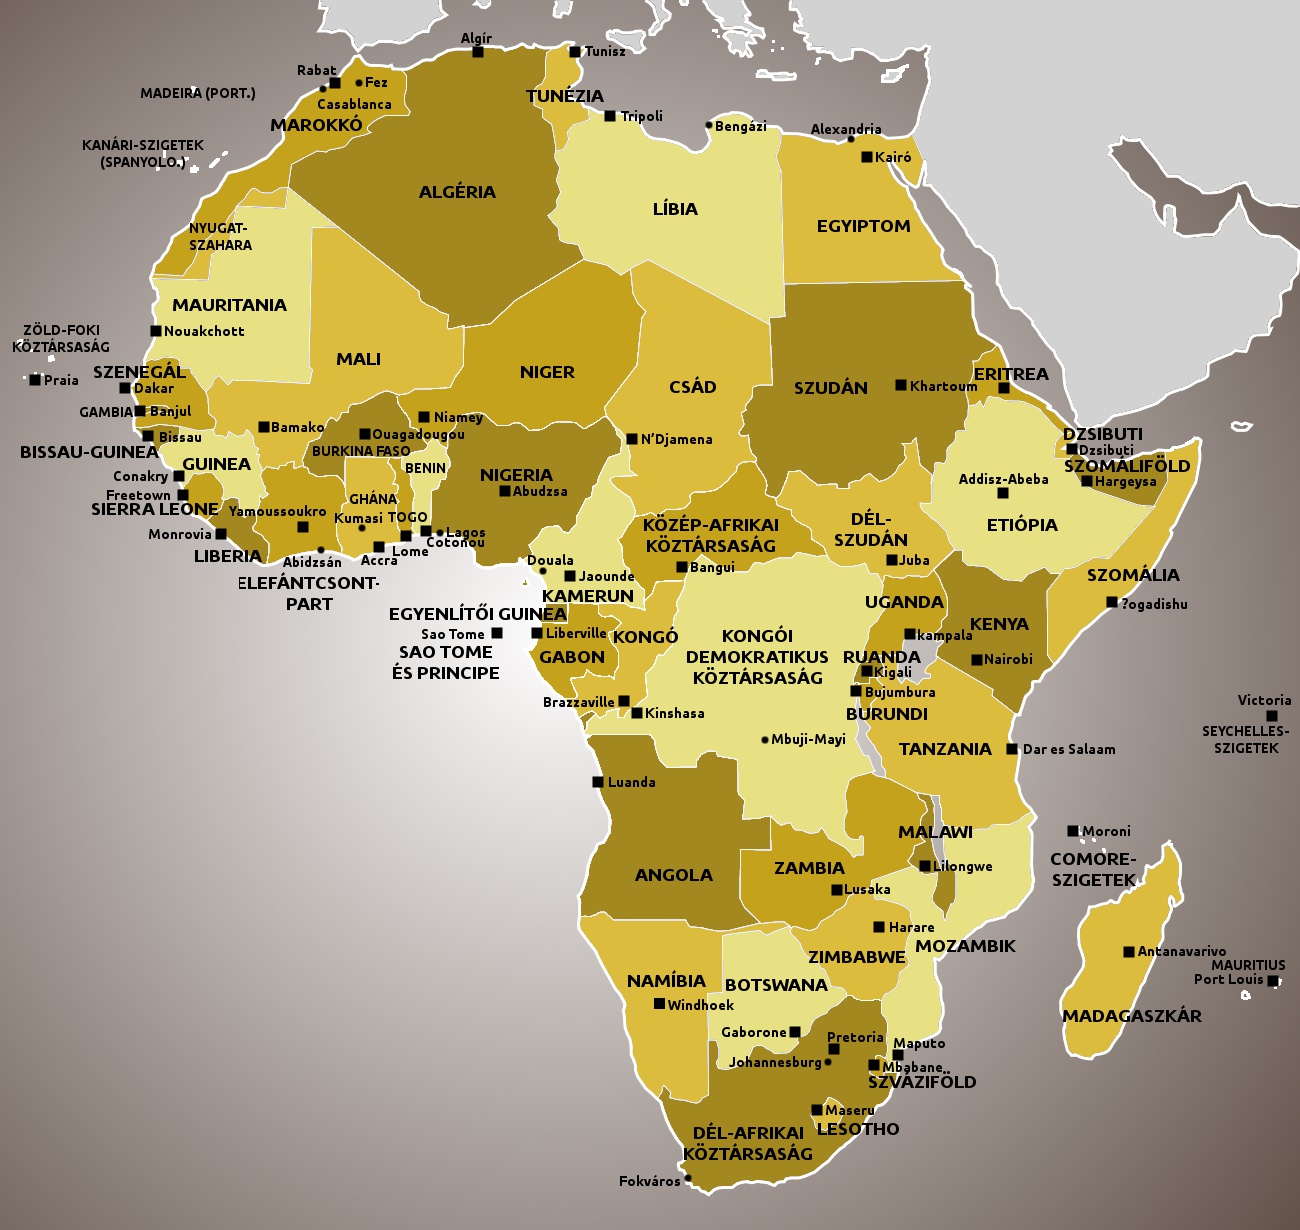 térkép afrika országai Afrika térkép fővárosokkal térkép afrika országai